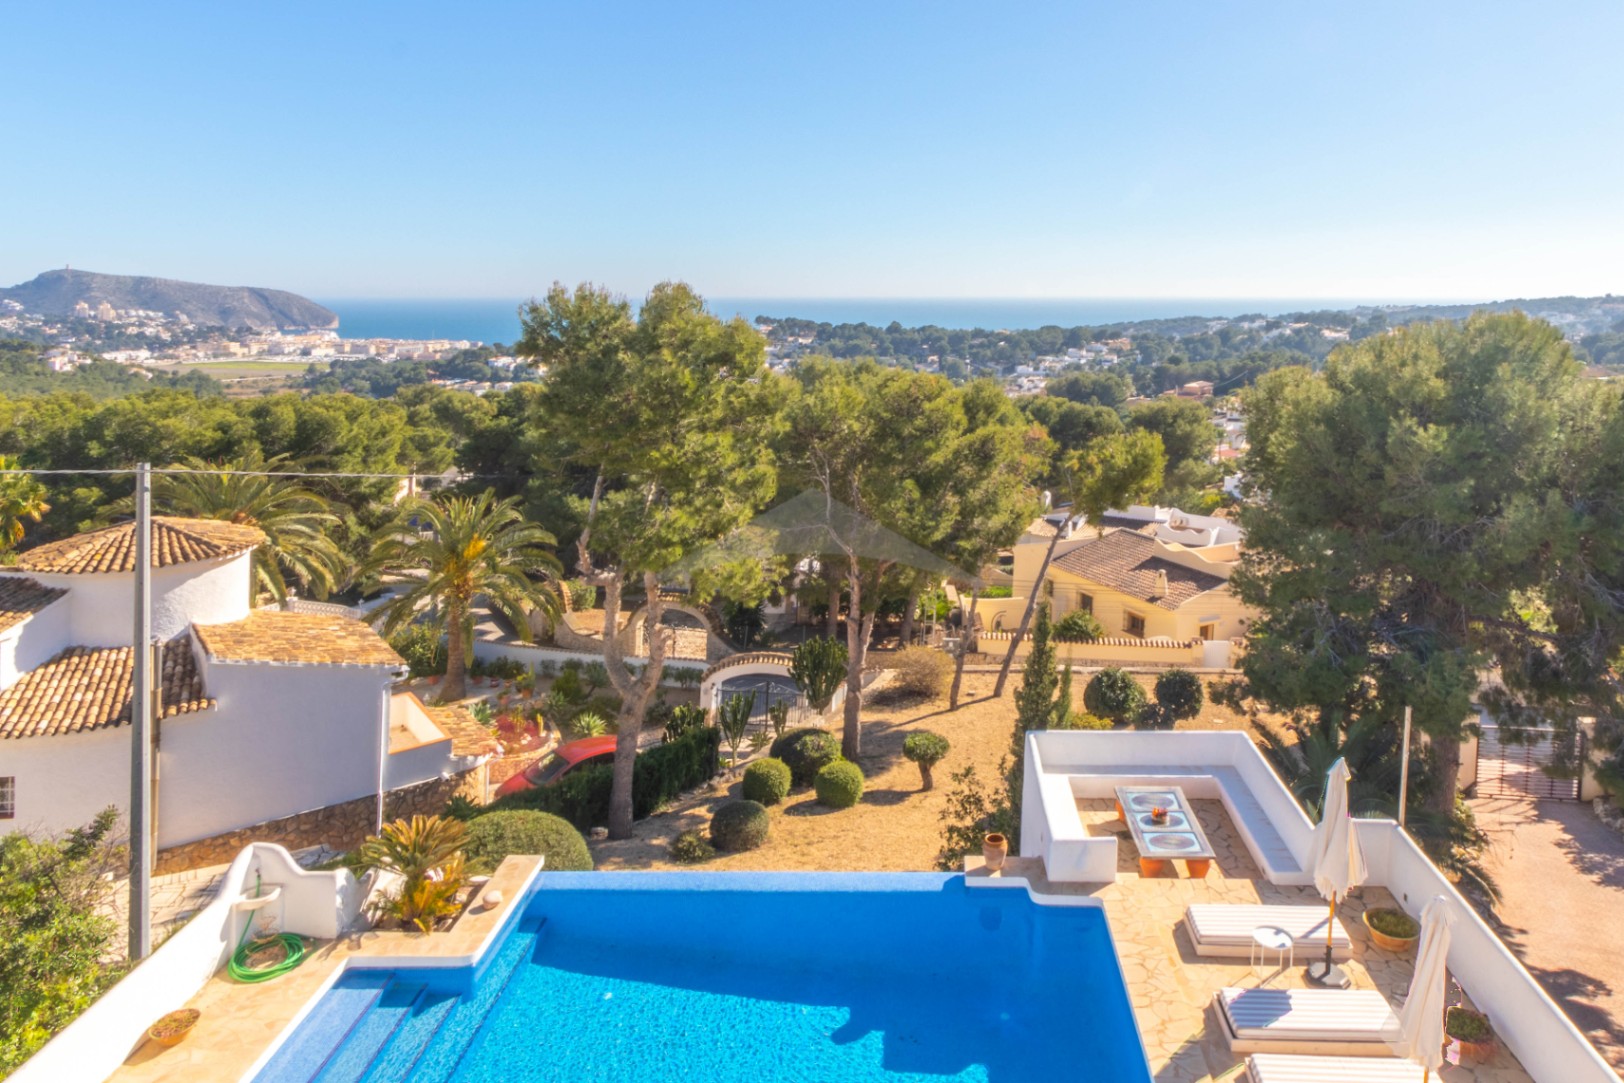 Villa in Moraira met panoramisch uitzicht op zee.